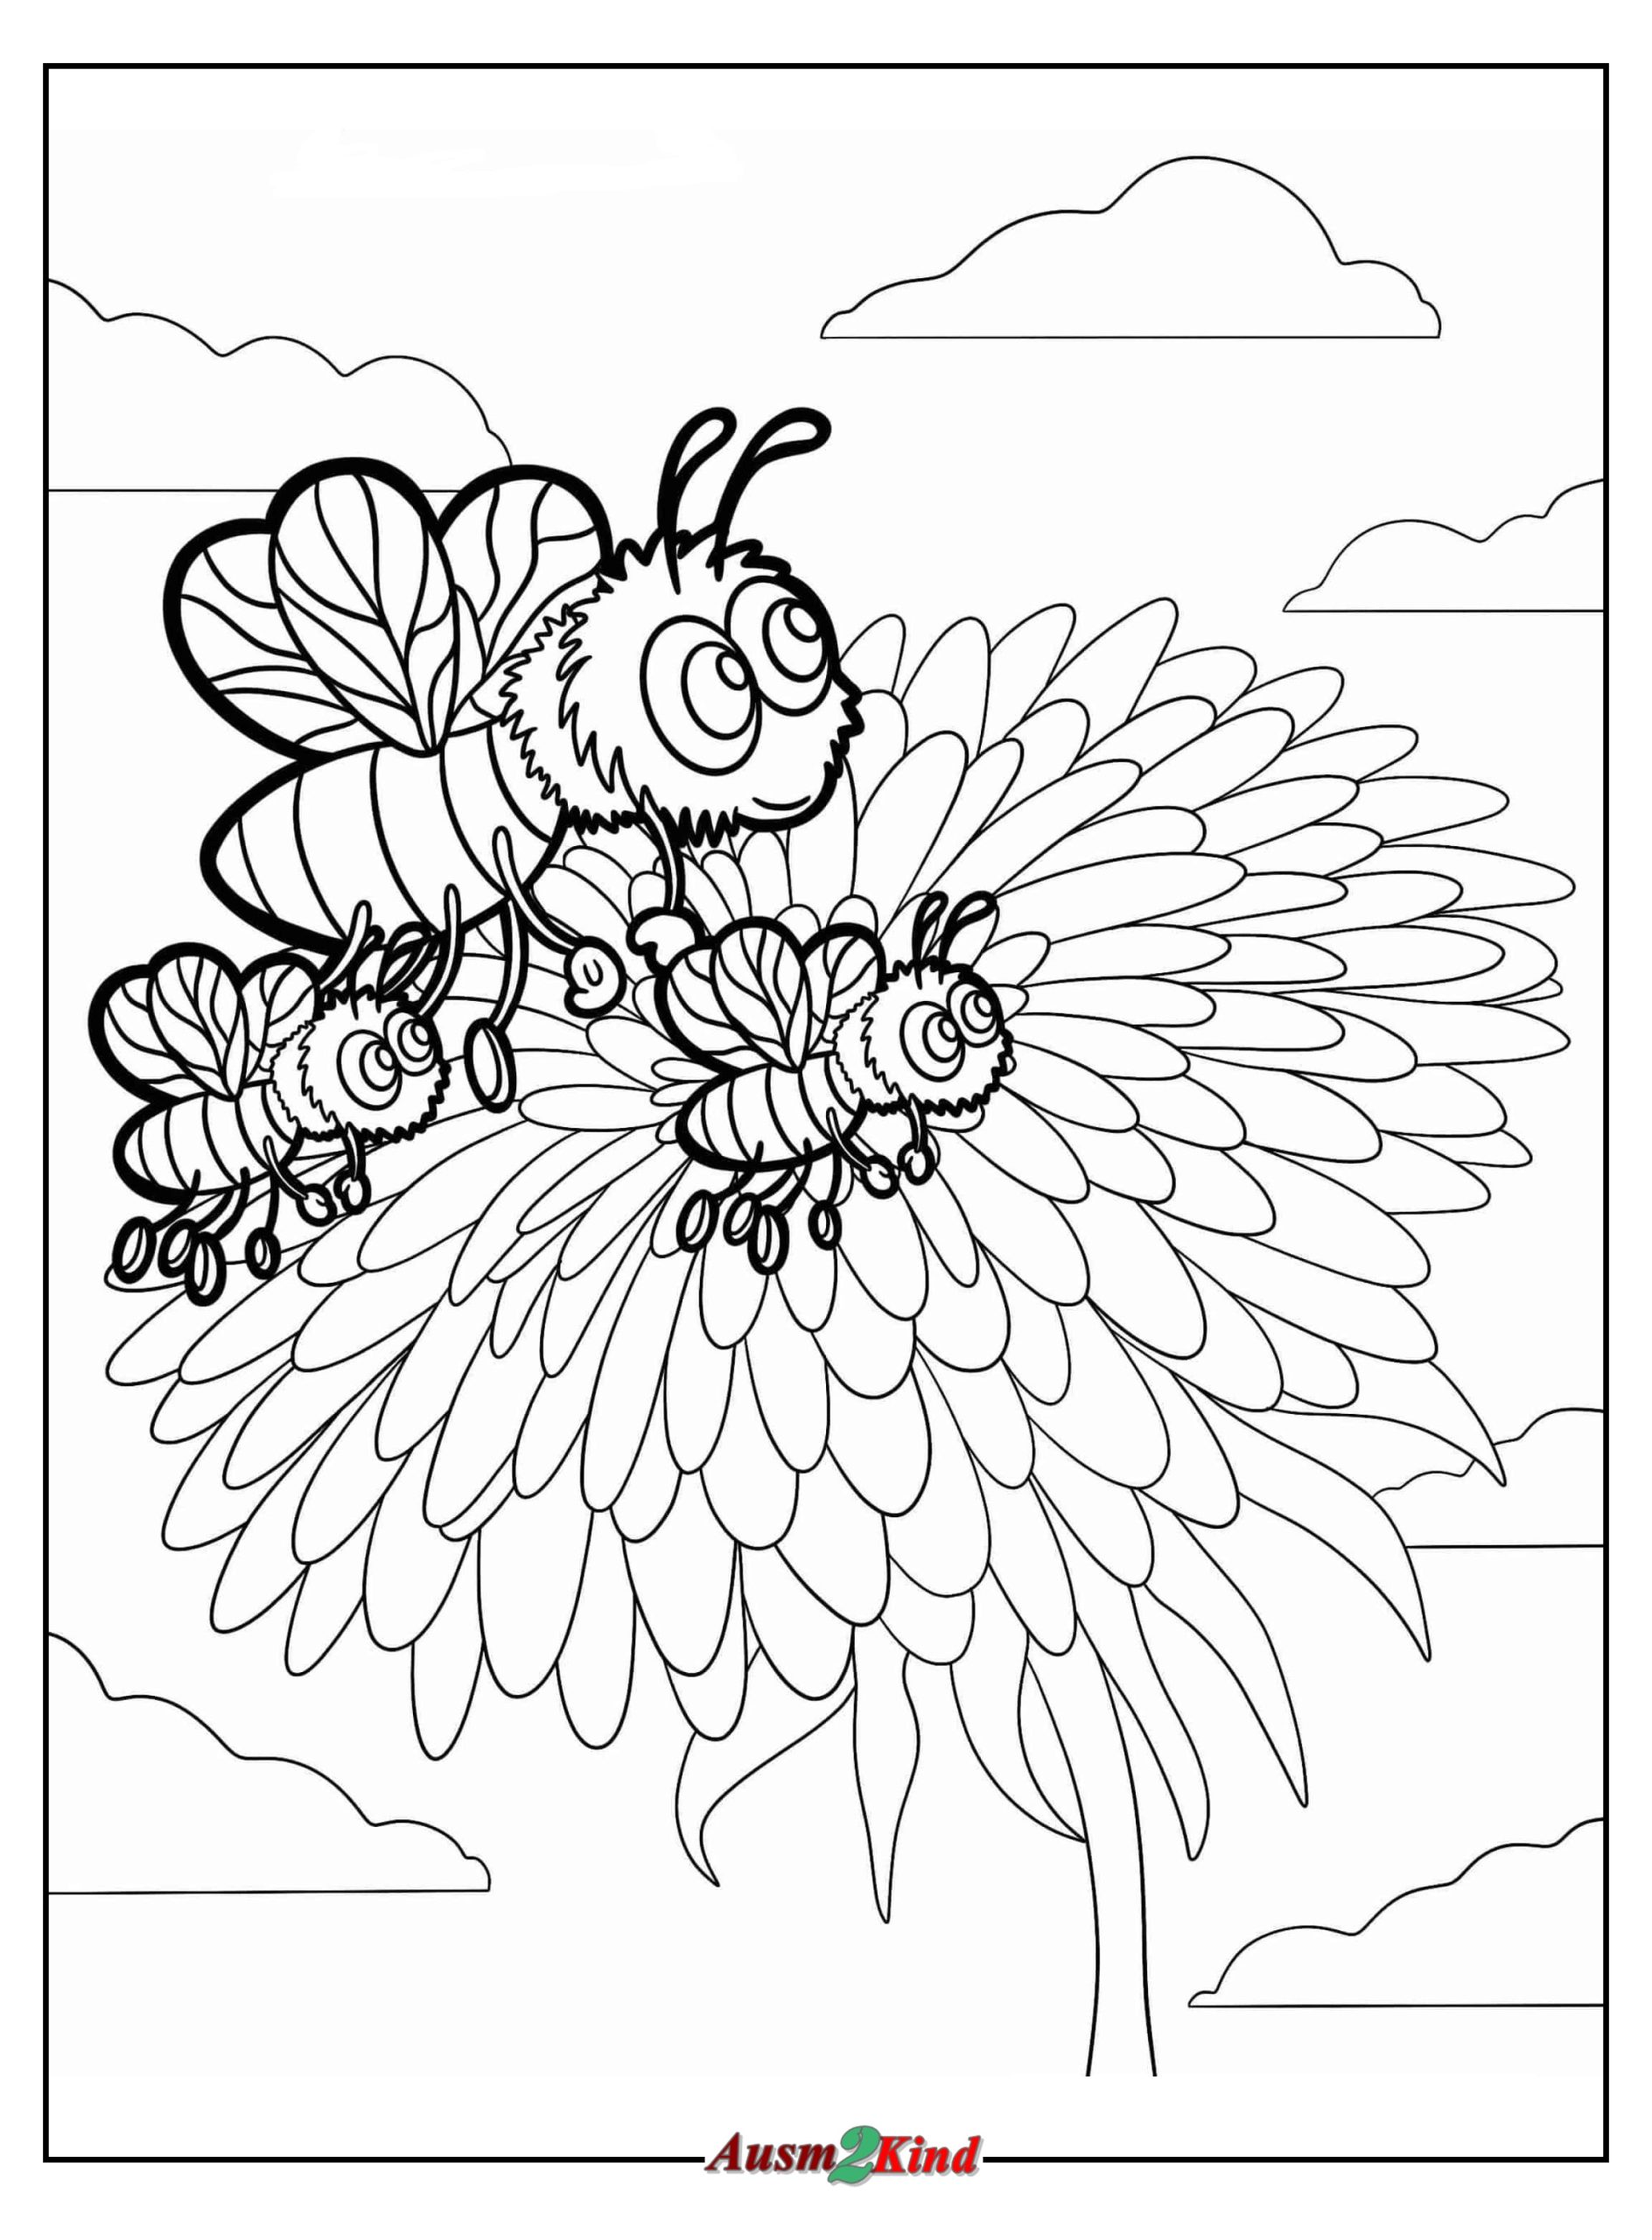 Drei Süße Bienen fliegen neben der Blume Ausmalbild